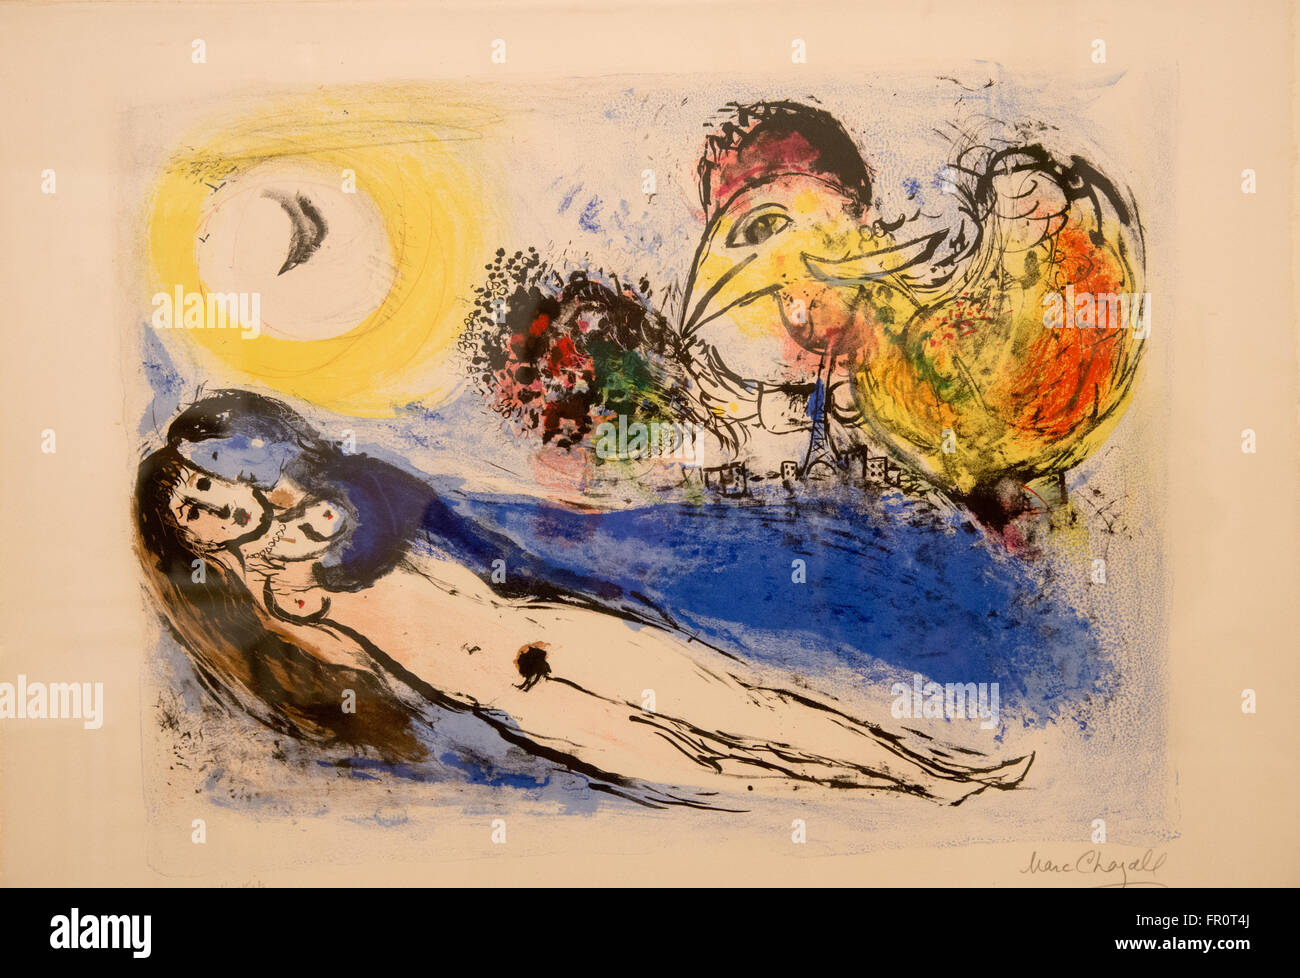 'bonjour sur paris' chagall 1952 lithography Stock Photo